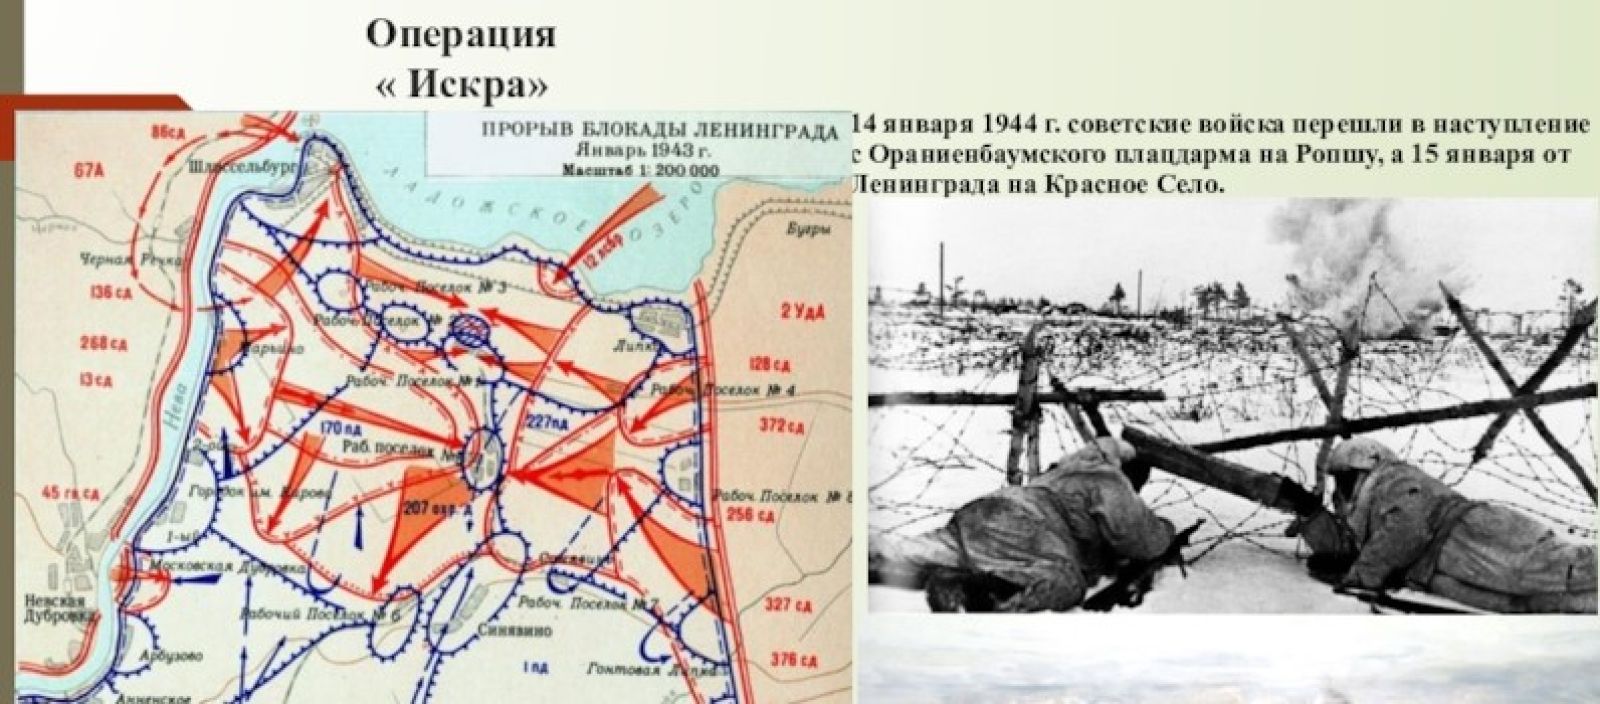 Переход часть операции. Карта прорыва блокады Ленинграда в 1943 году. Прорыв блокады Ленинграда карта 1944.